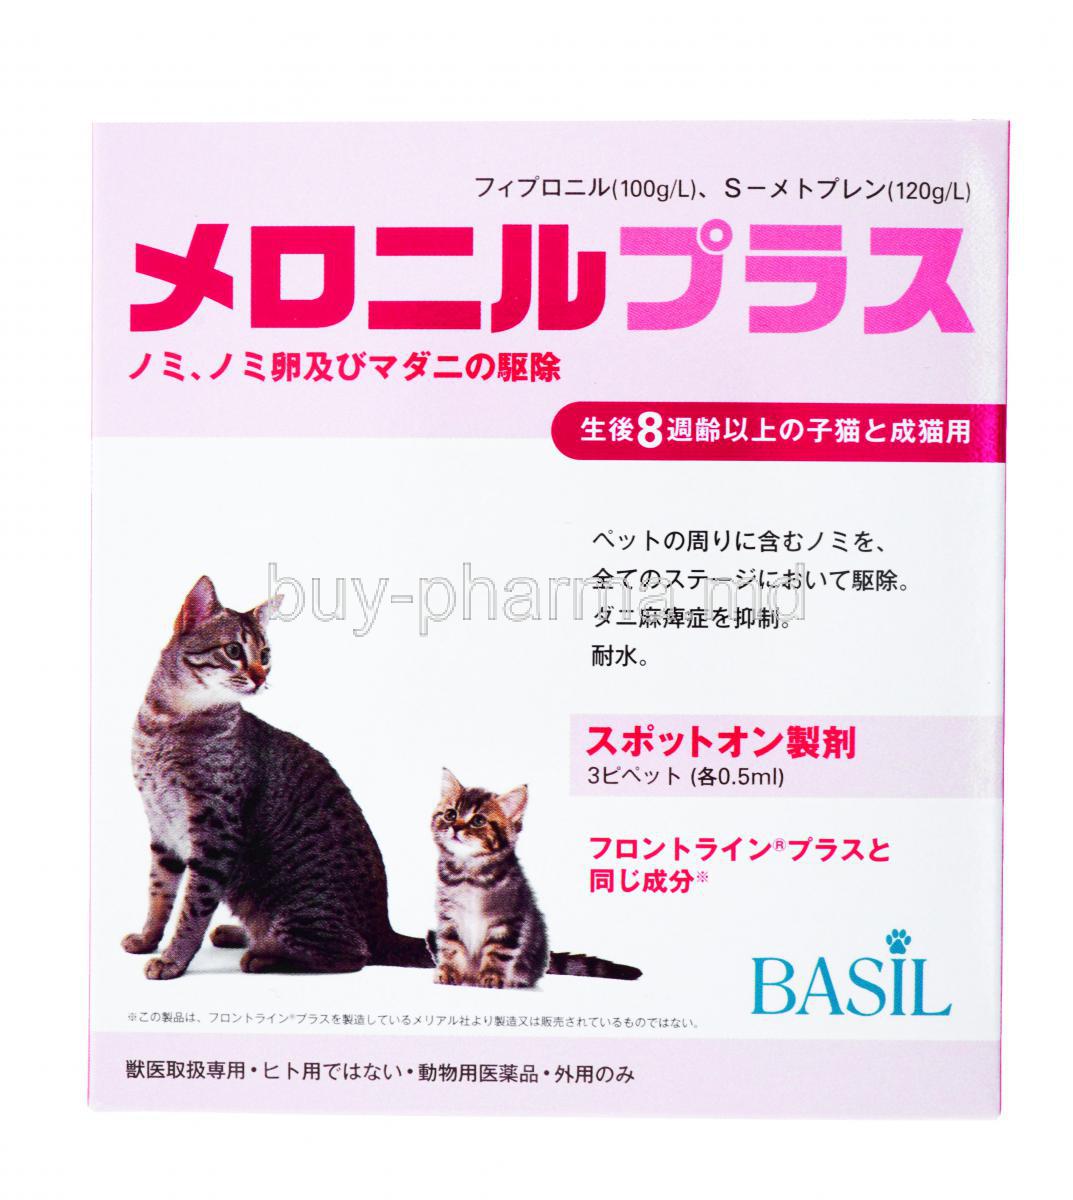 Meronil Plus for Cats & Kittens, Fipronil + (S)-Methoprene, Box front presentation